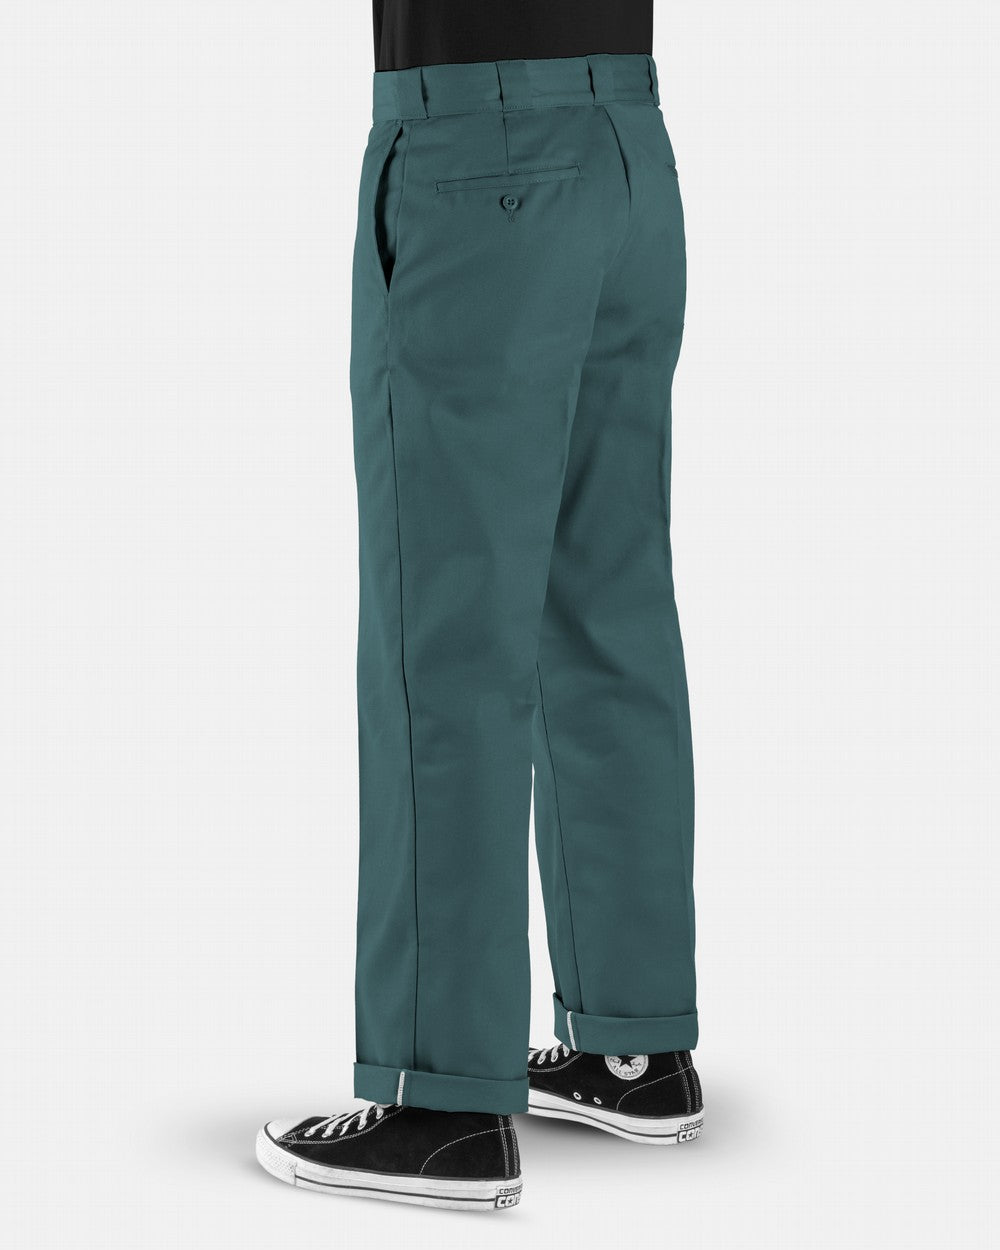 Pants  Dickies Mens 874 Original Fit Work Pant Lincoln Green *  CraftyParalegal